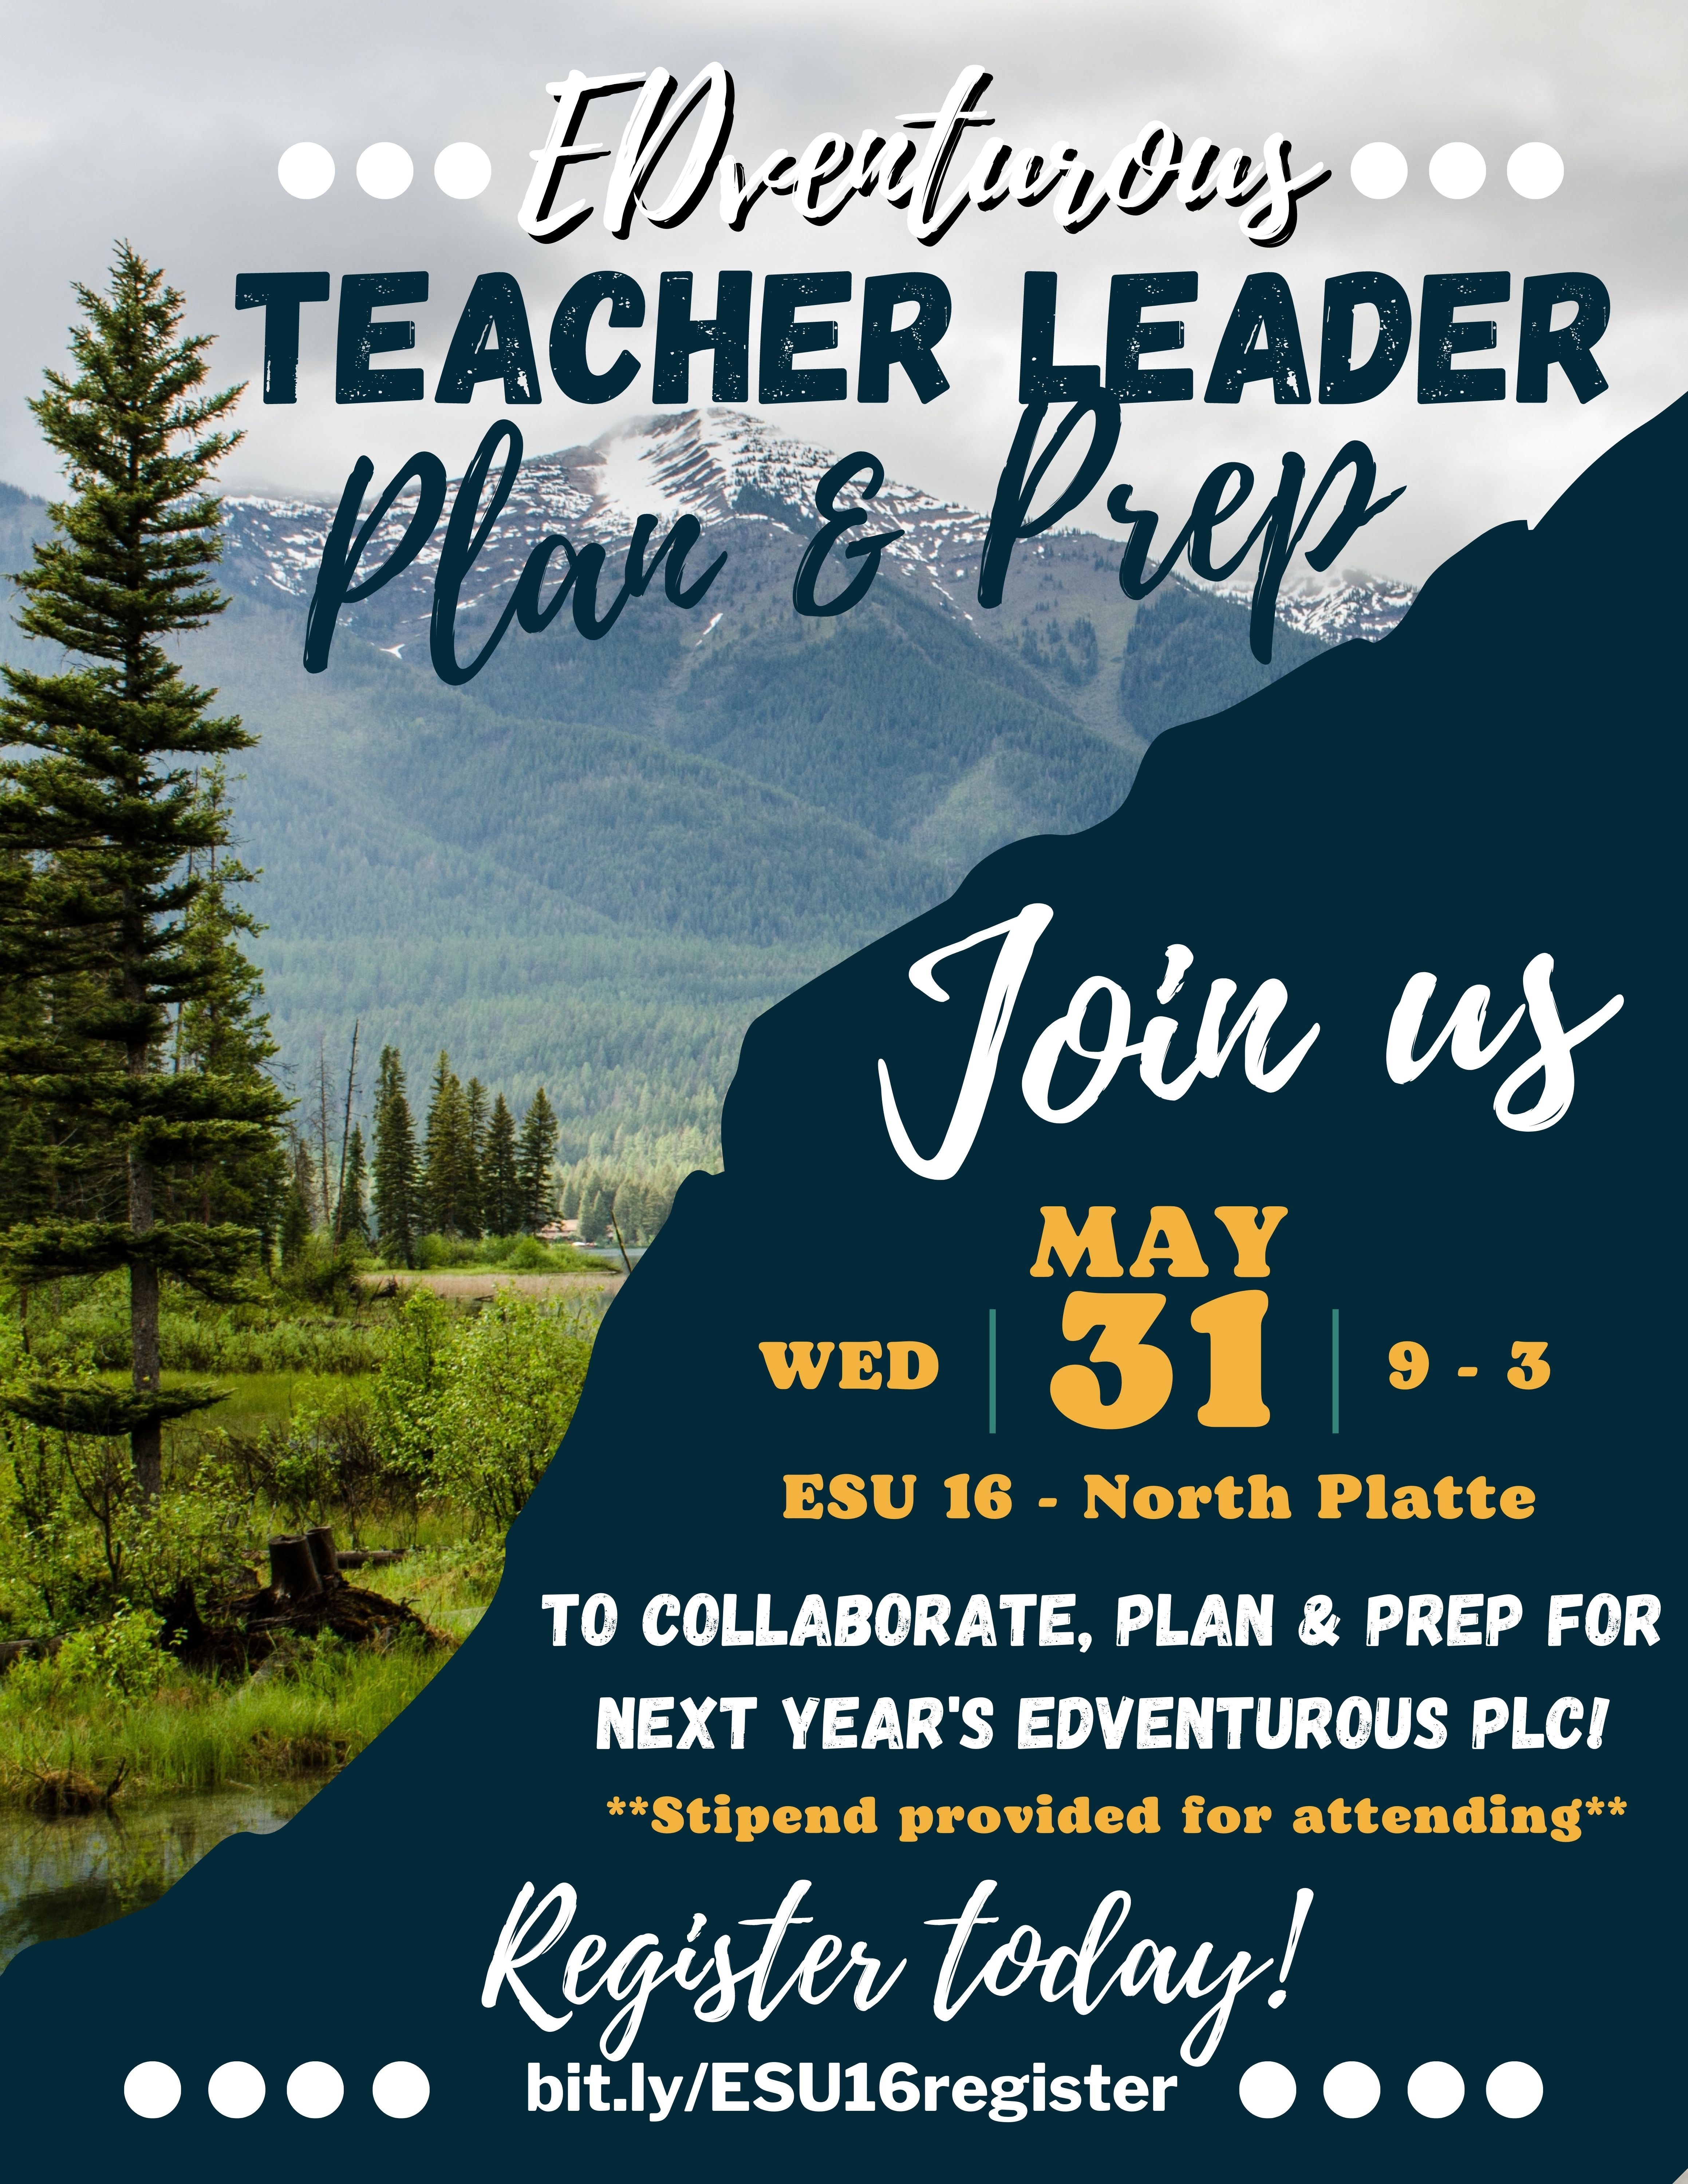 Teacher Leader Plan and Prep Day for EdVenturous PLC